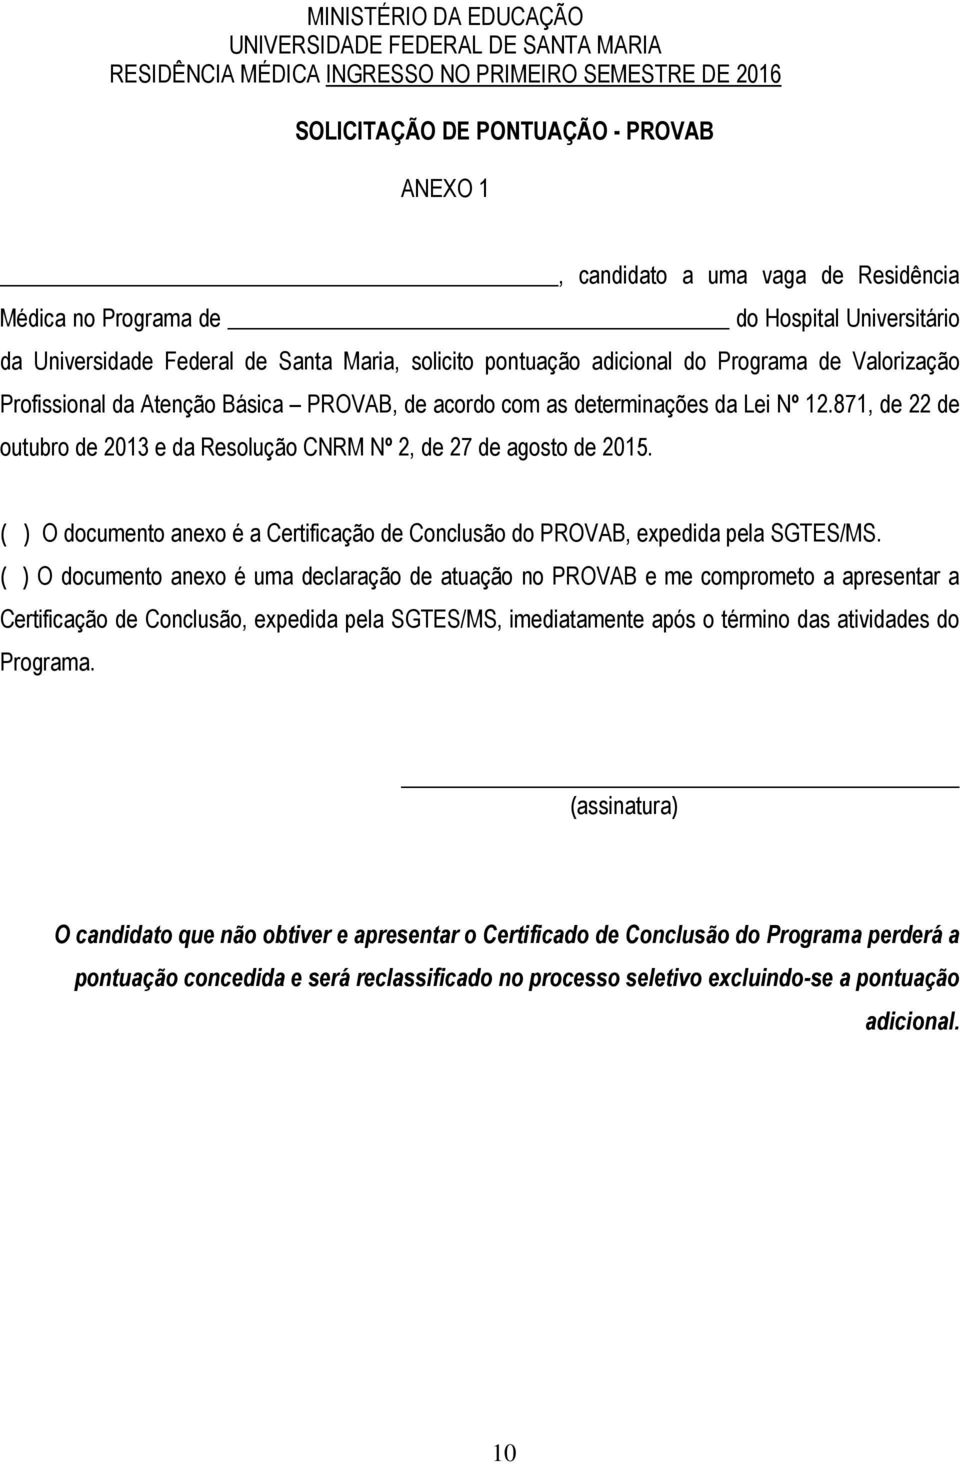 determinações da Lei Nº 12.871, de 22 de outubro de 2013 e da Resolução CNRM Nº 2, de 27 de agosto de 2015. ( ) O documento anexo é a Certificação de Conclusão do PROVAB, expedida pela SGTES/MS.